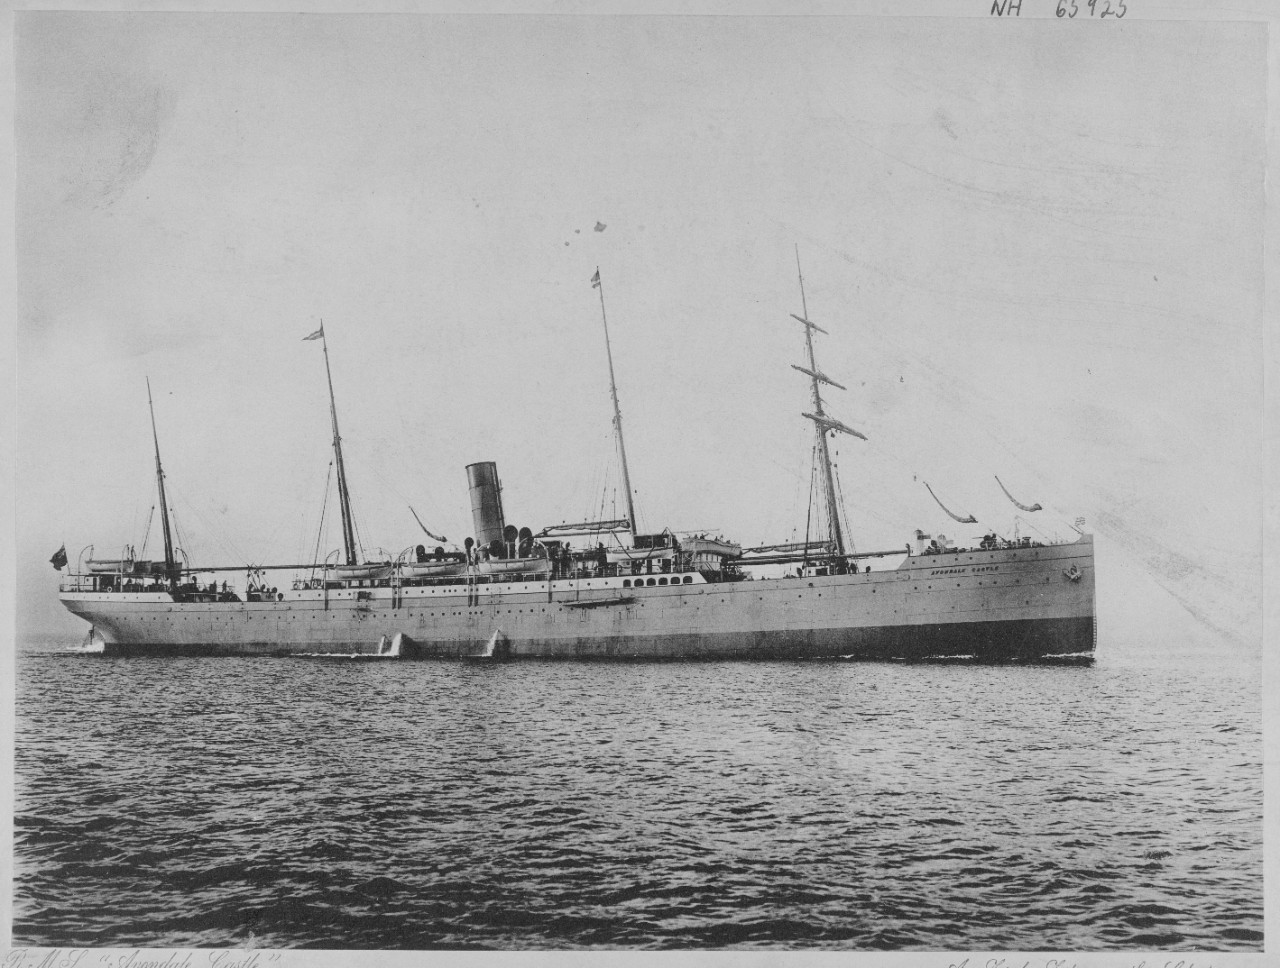 SS AVONDALE CASTLE (British merchant ship)